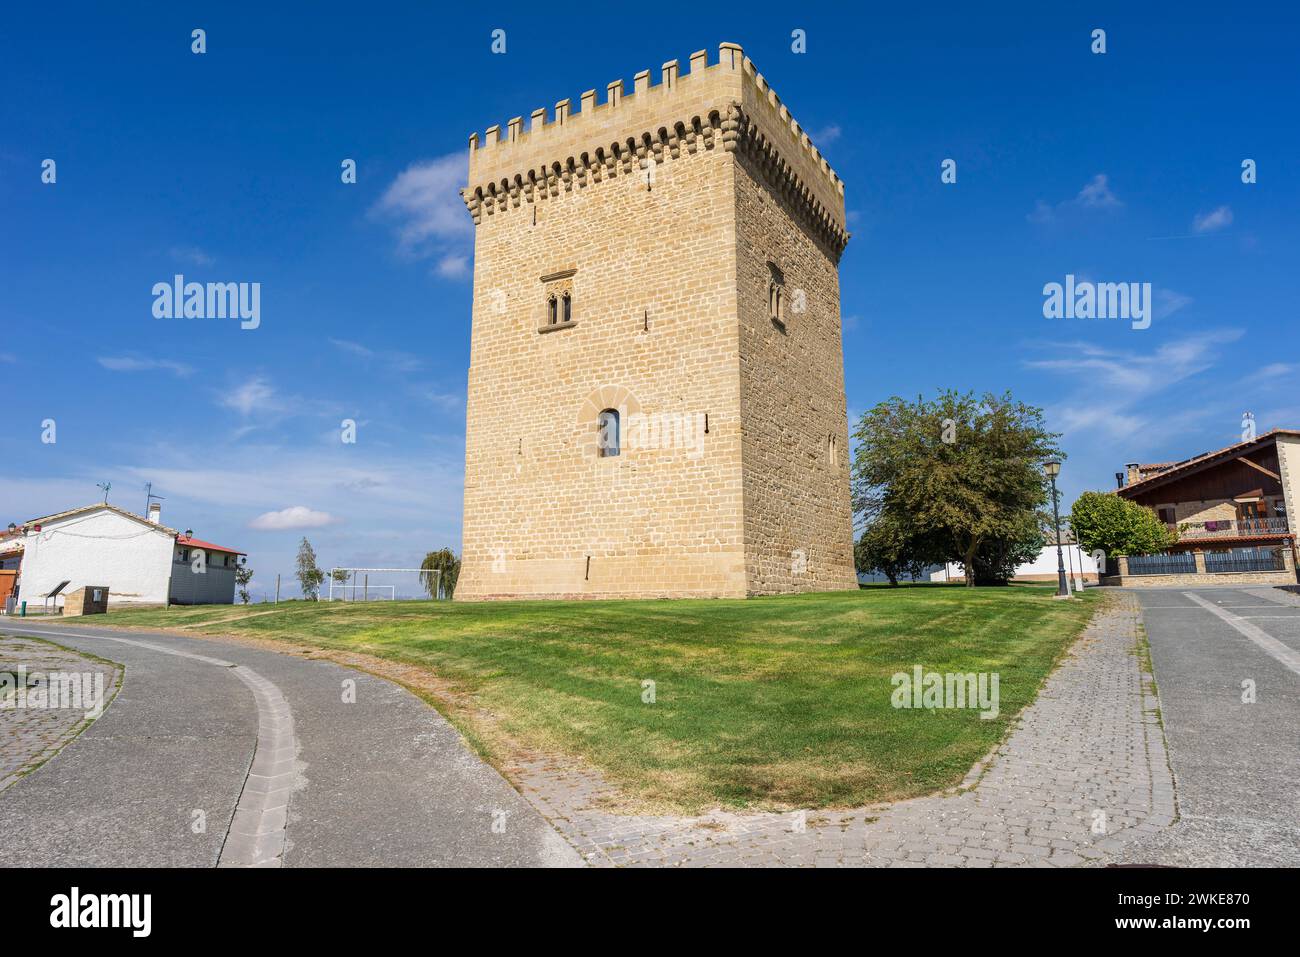 Olcoz Palace Tower, mittelalterliche Bauten von kulturellem Interesse, Olcoz, Valdizarbe Tal, Navarra, Spanien. Stockfoto